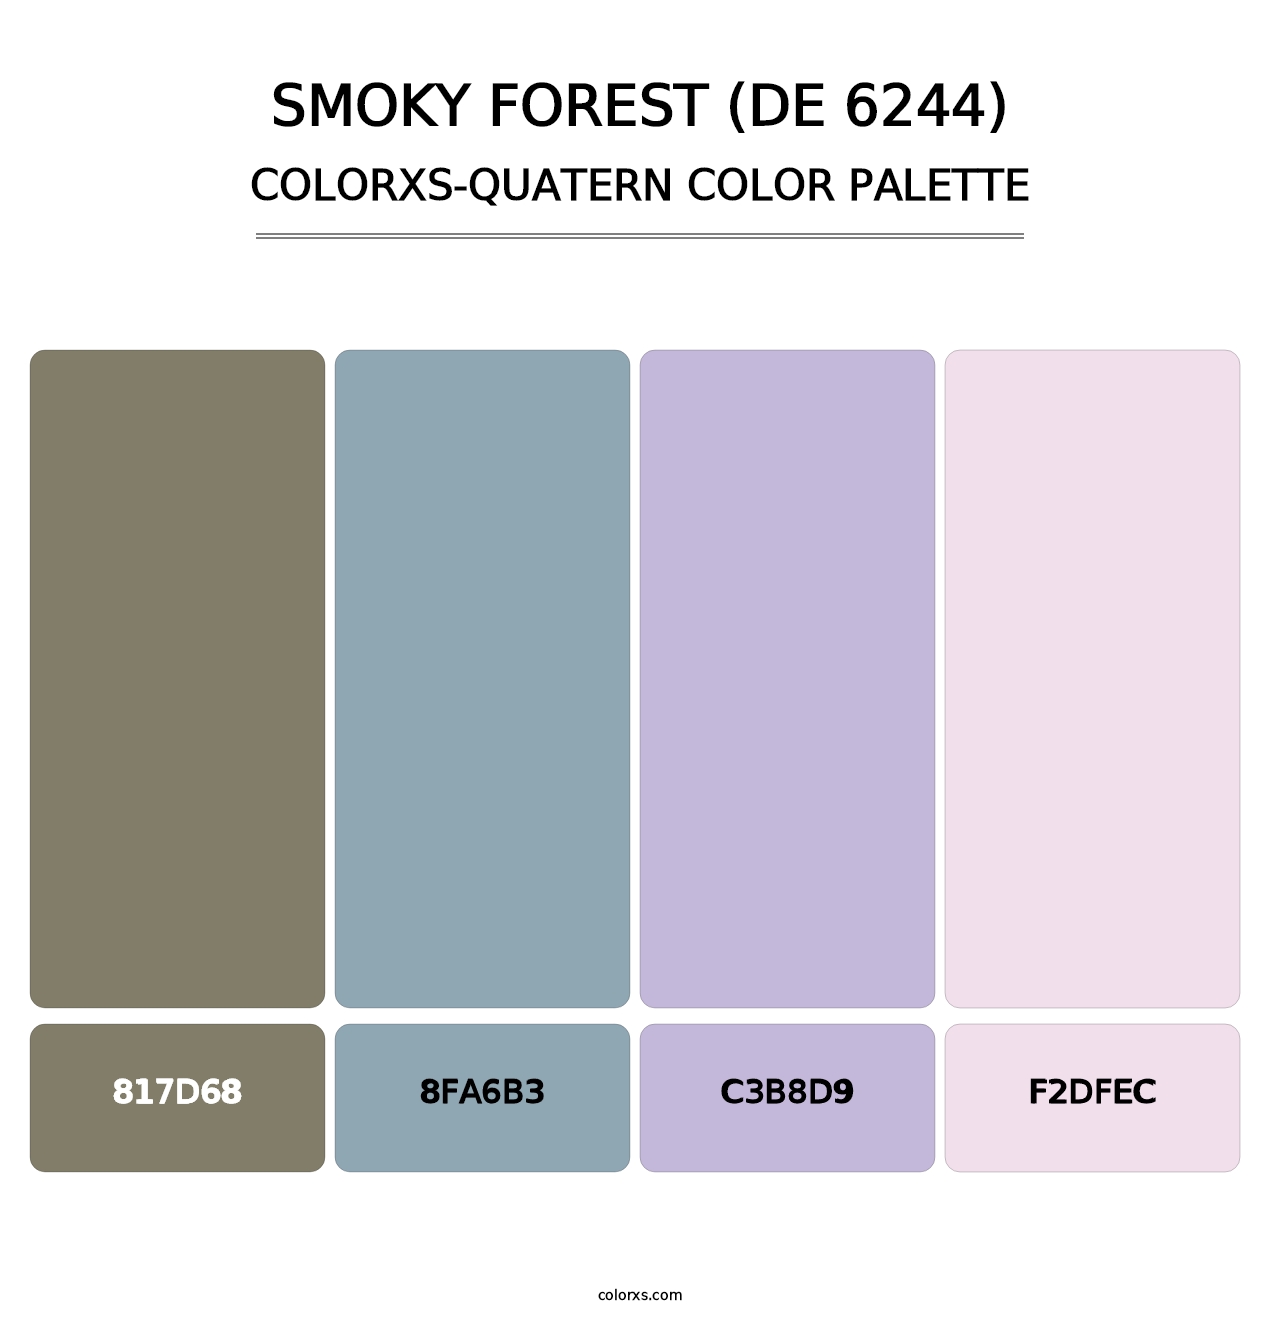 Smoky Forest (DE 6244) - Colorxs Quatern Palette